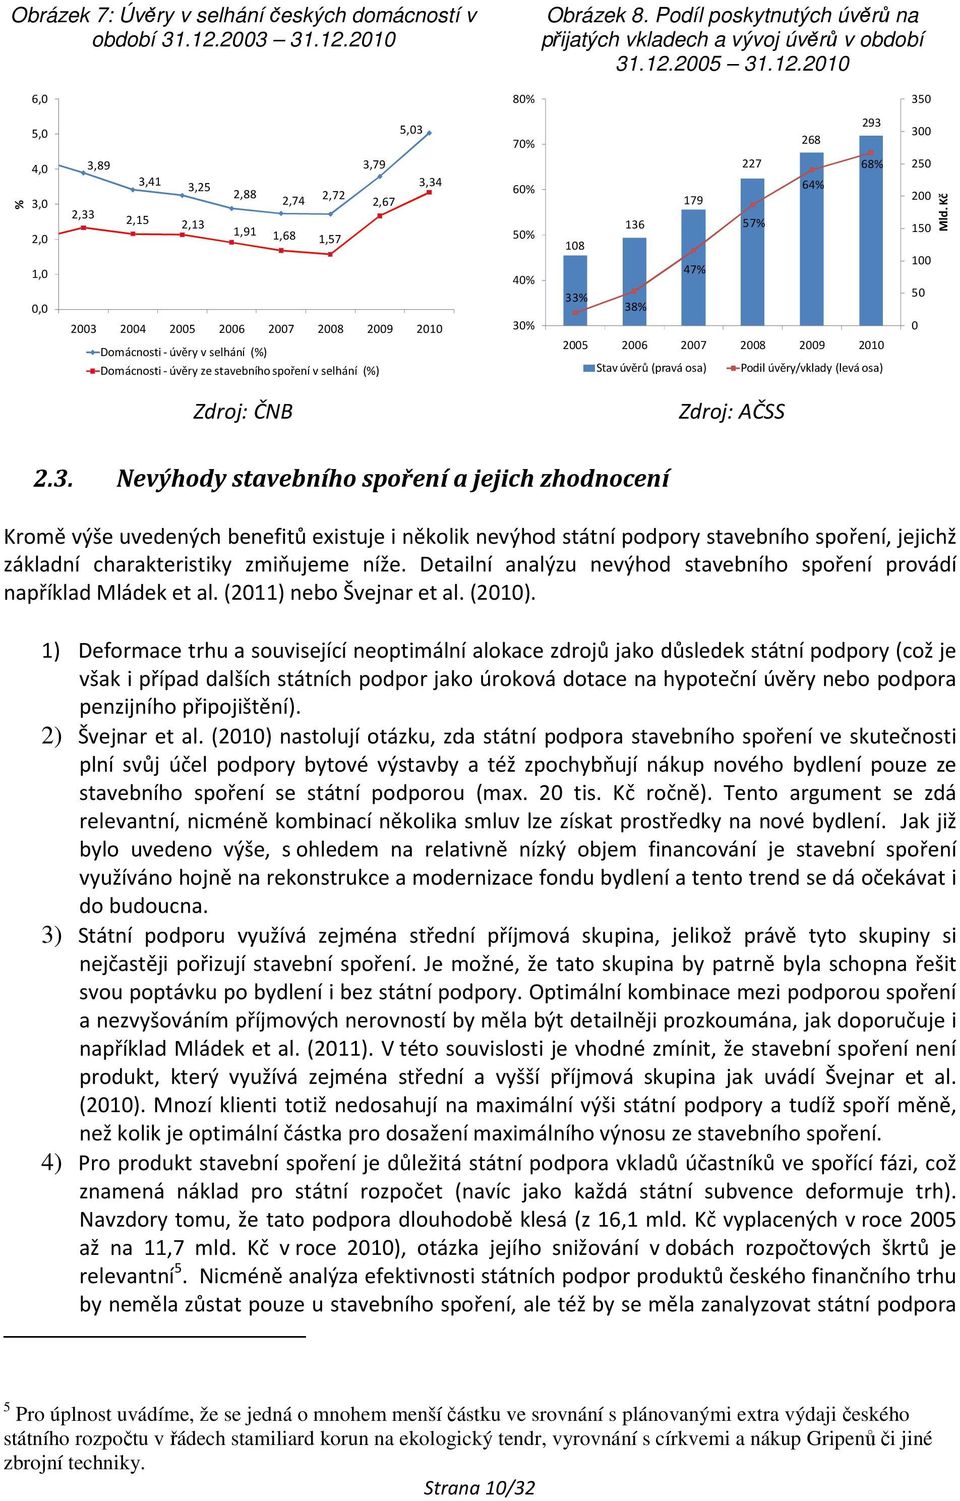 2010 Obrázek 8. Podíl poskytnutých úvěrů na přijatých vkladech a vývoj úvěrů v období 31.12.